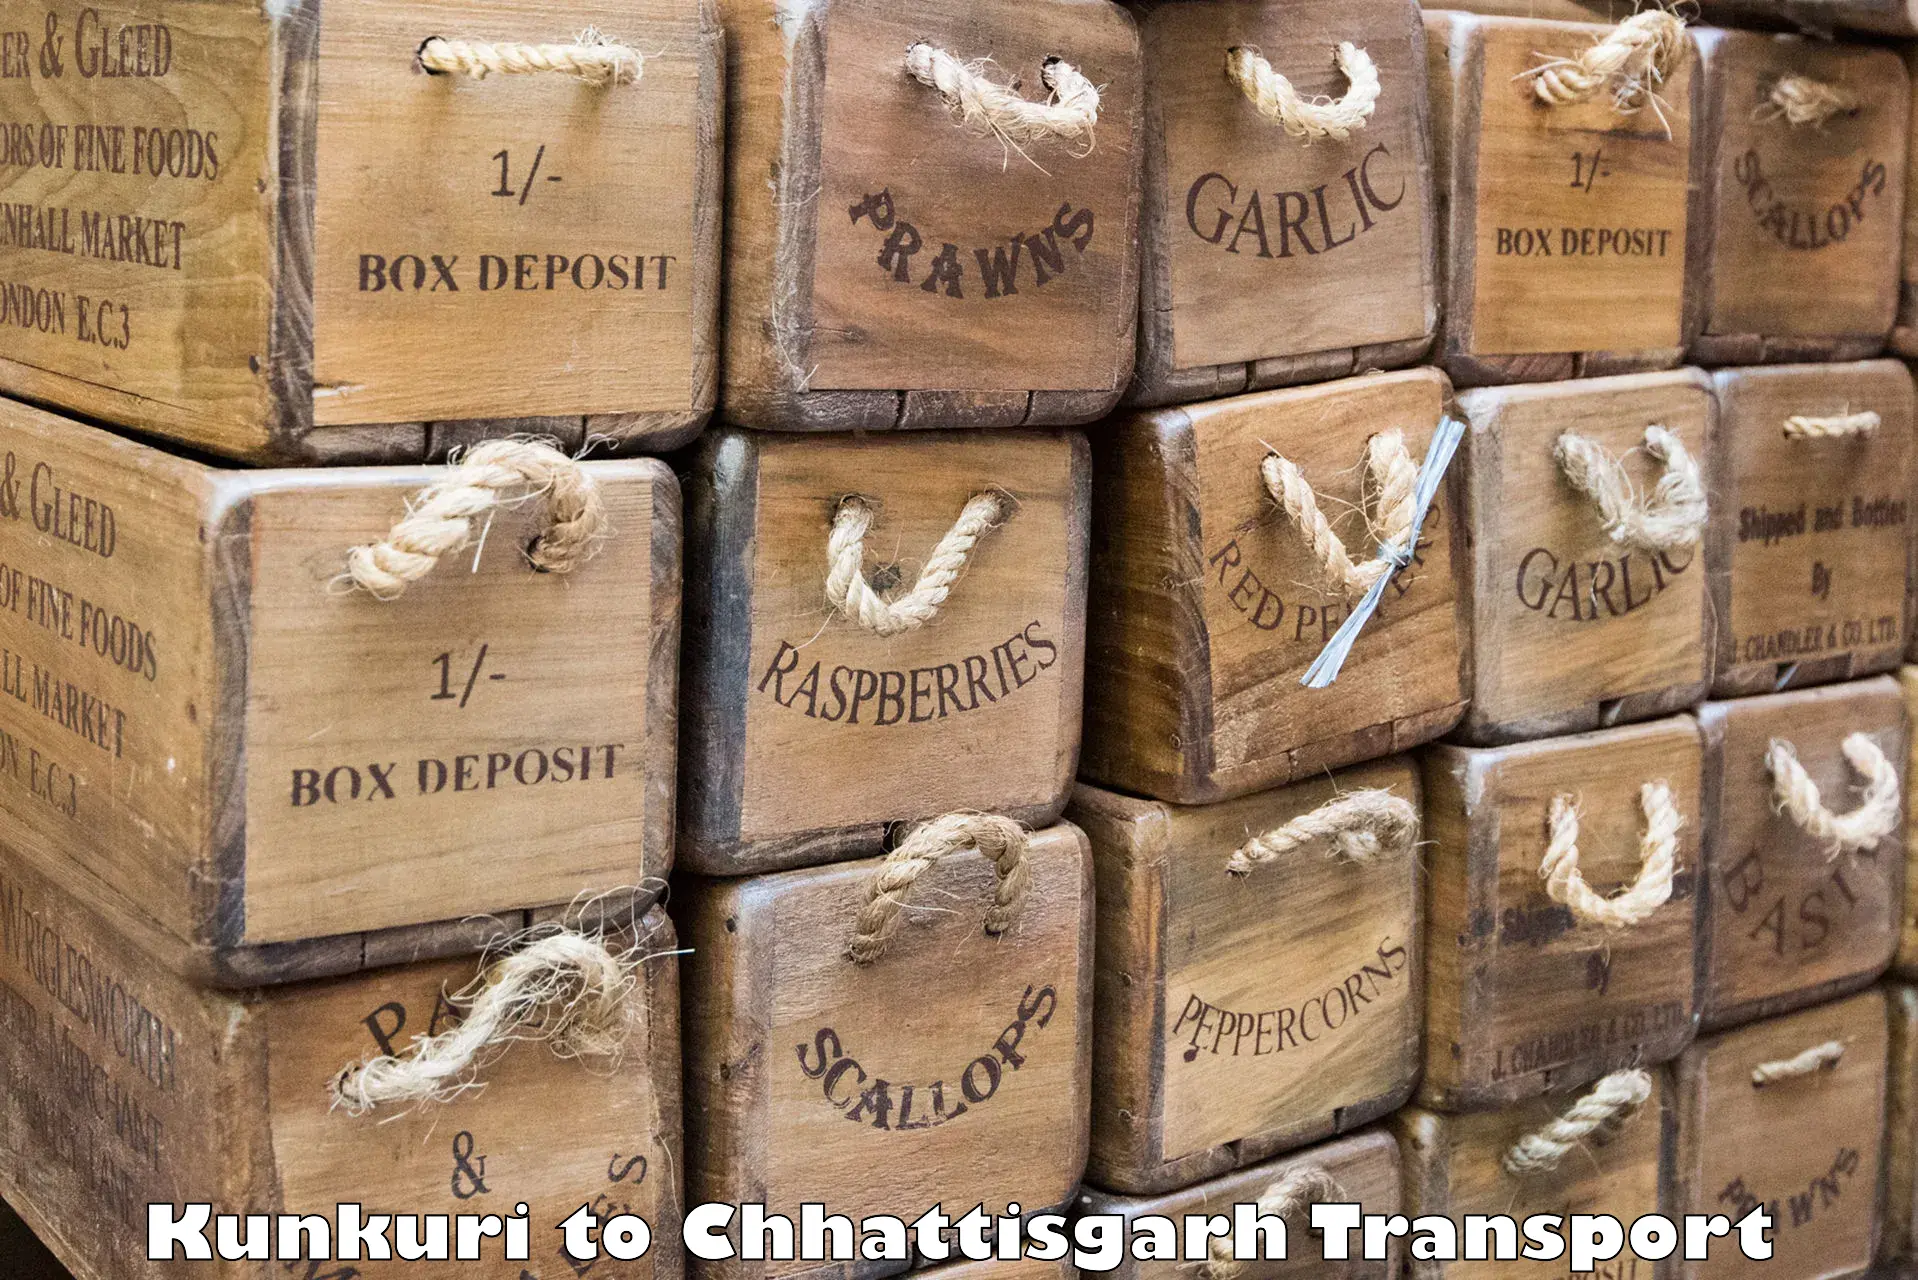 Delivery service Kunkuri to Chhattisgarh